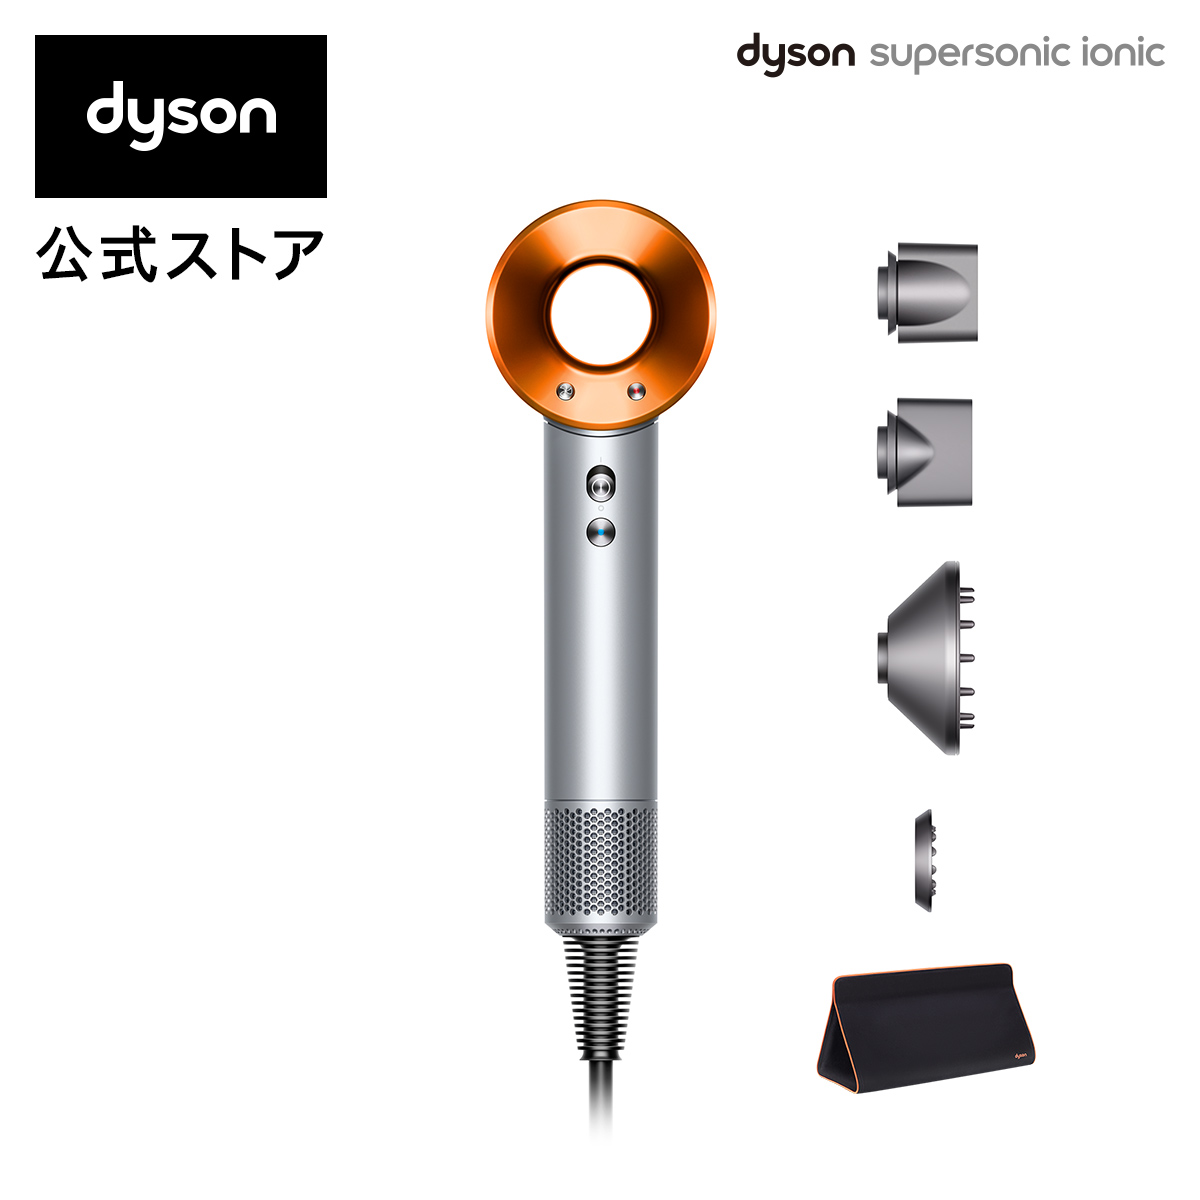 楽天市場 直販限定 収納スタンド付き 別送 ダイソン Dyson Supersonic Ionic 収納バッグ付き ヘアドライヤー ドライヤー Hd03 Ulf Ssc Tb Dyson公式 楽天市場店